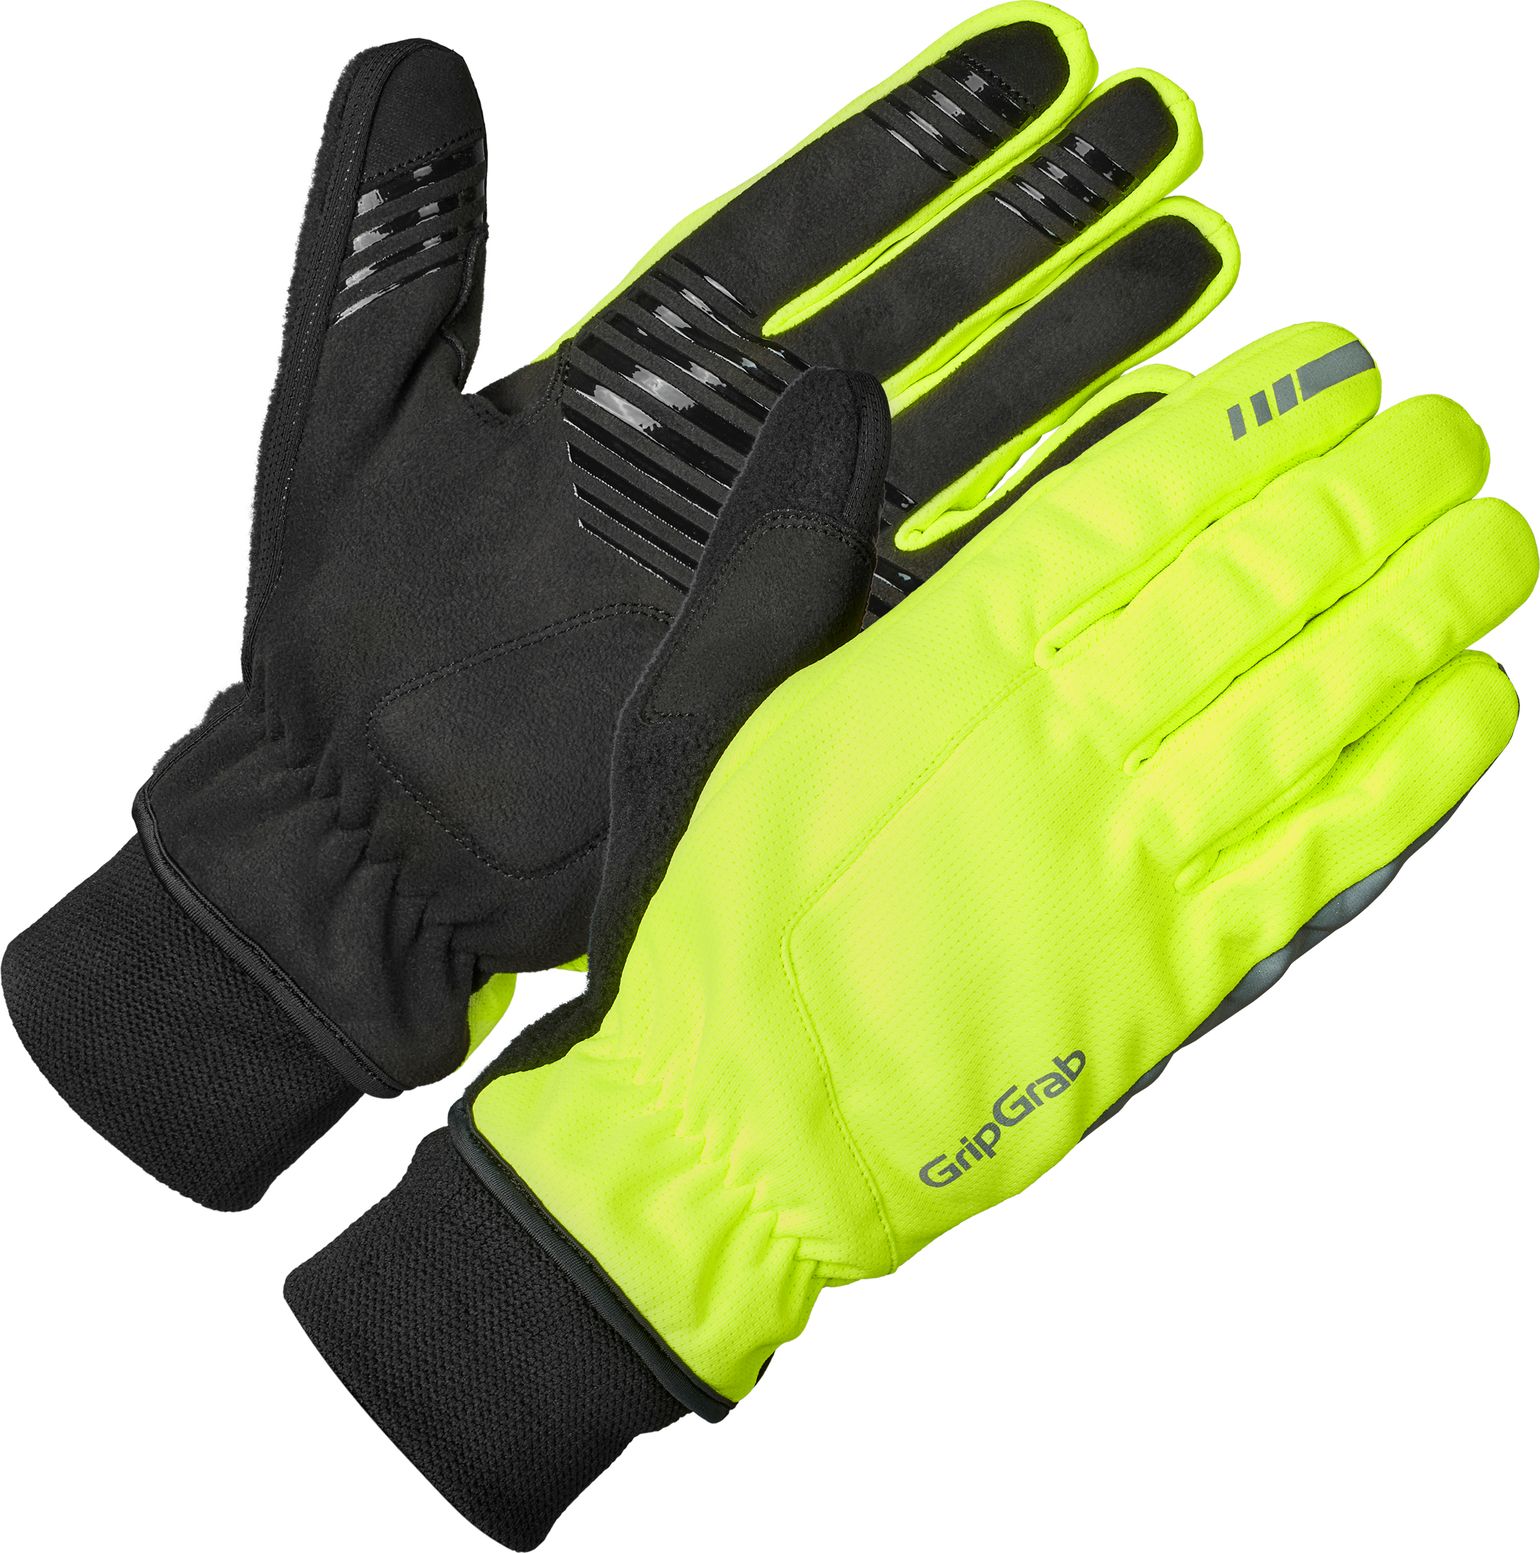 Windster 2 Windproof Winter Gloves Yellow Hi-Vis